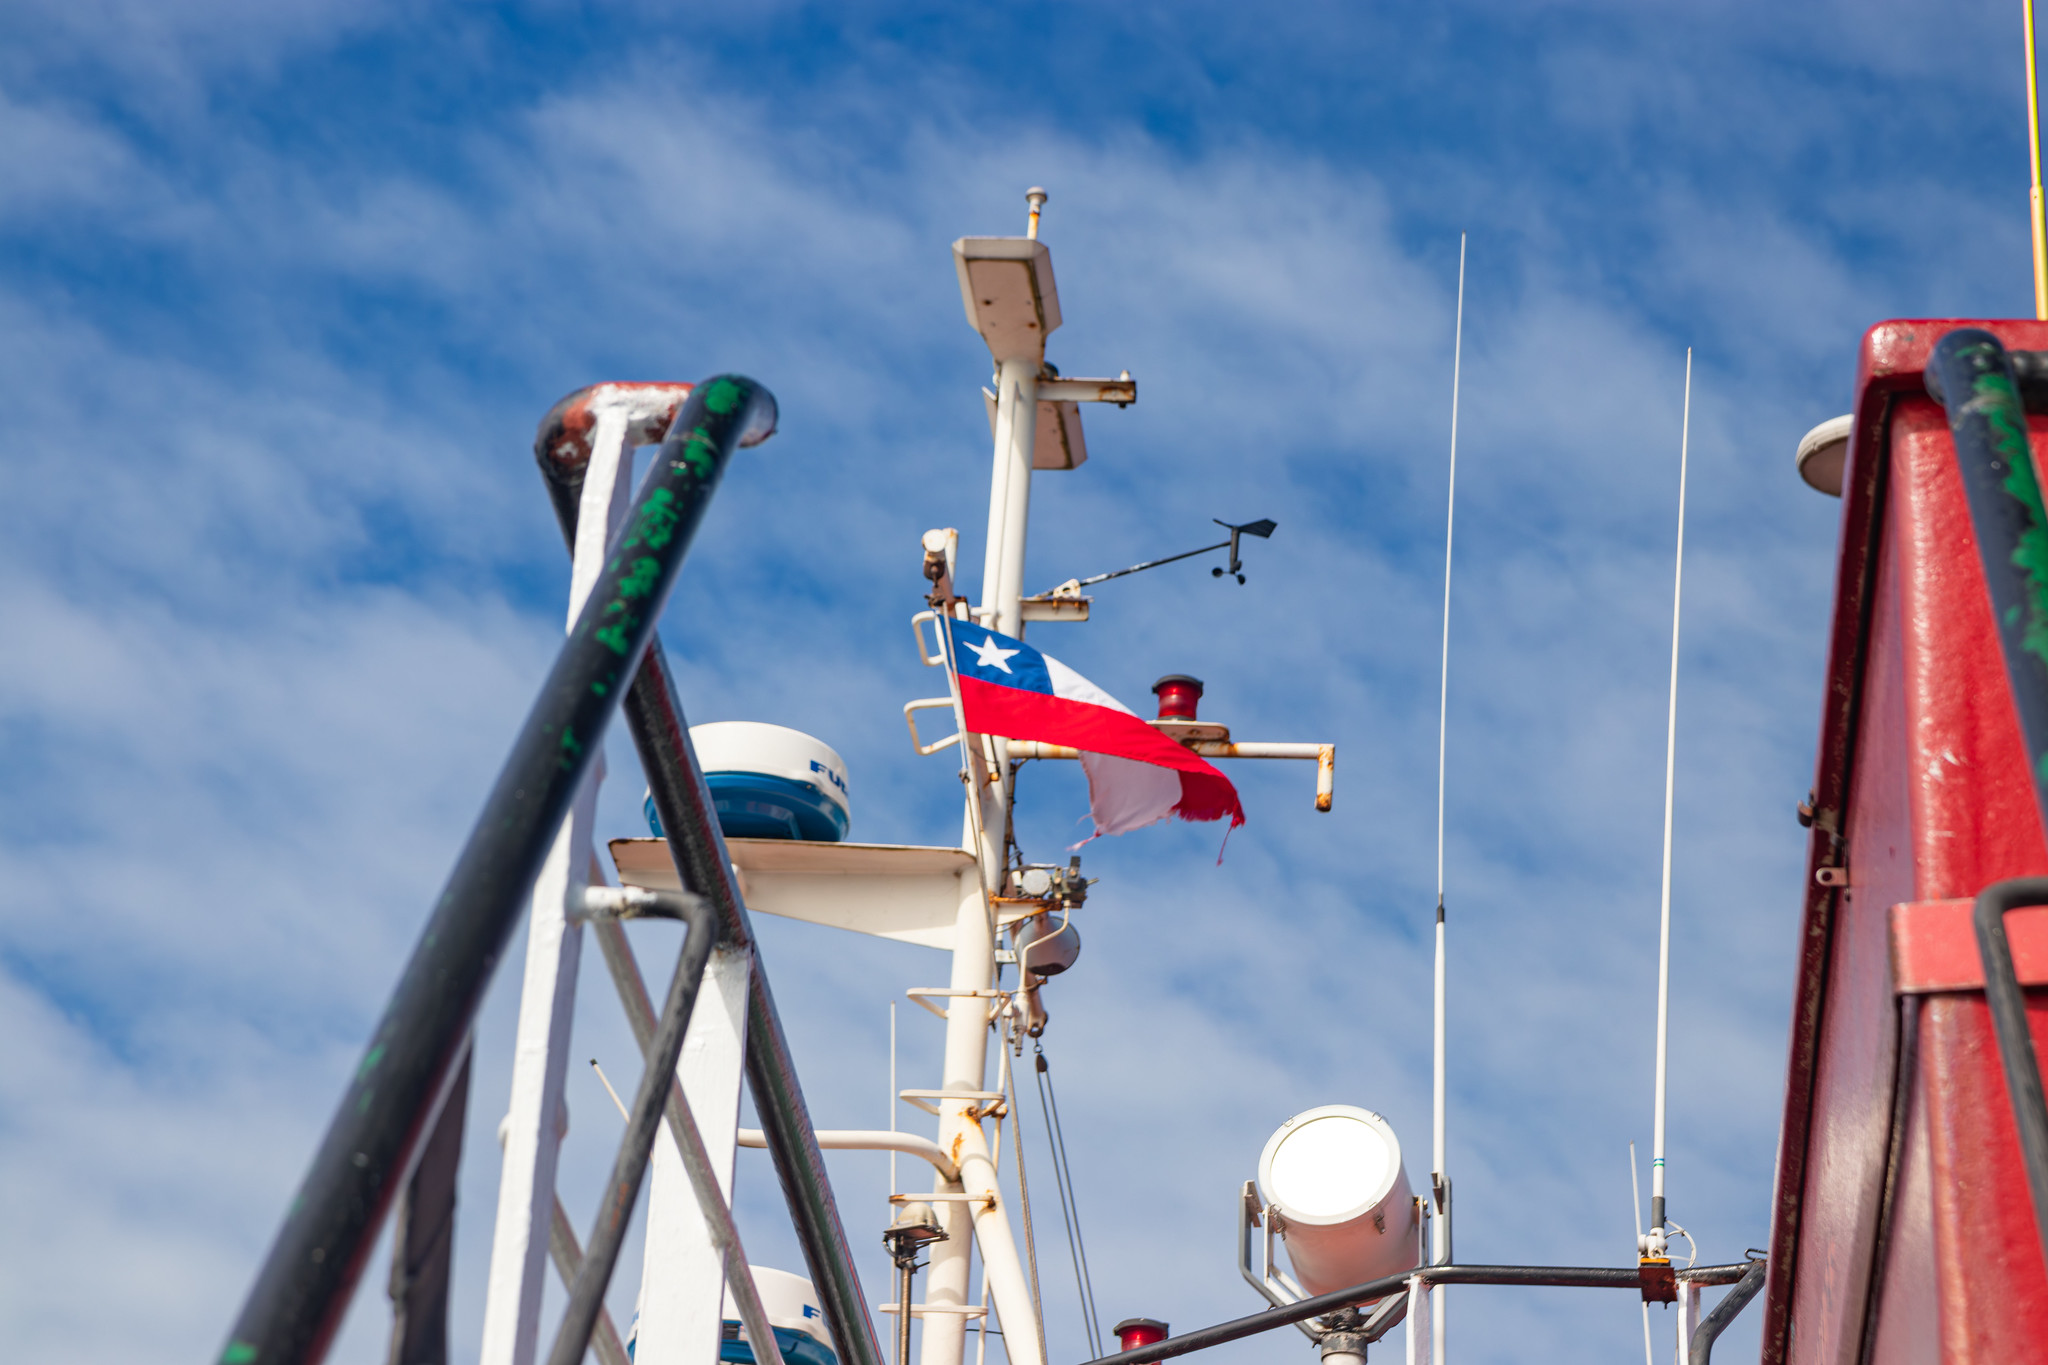 Le drapeau chilien flotte au vent sur un ferry de l'île de Chiloé